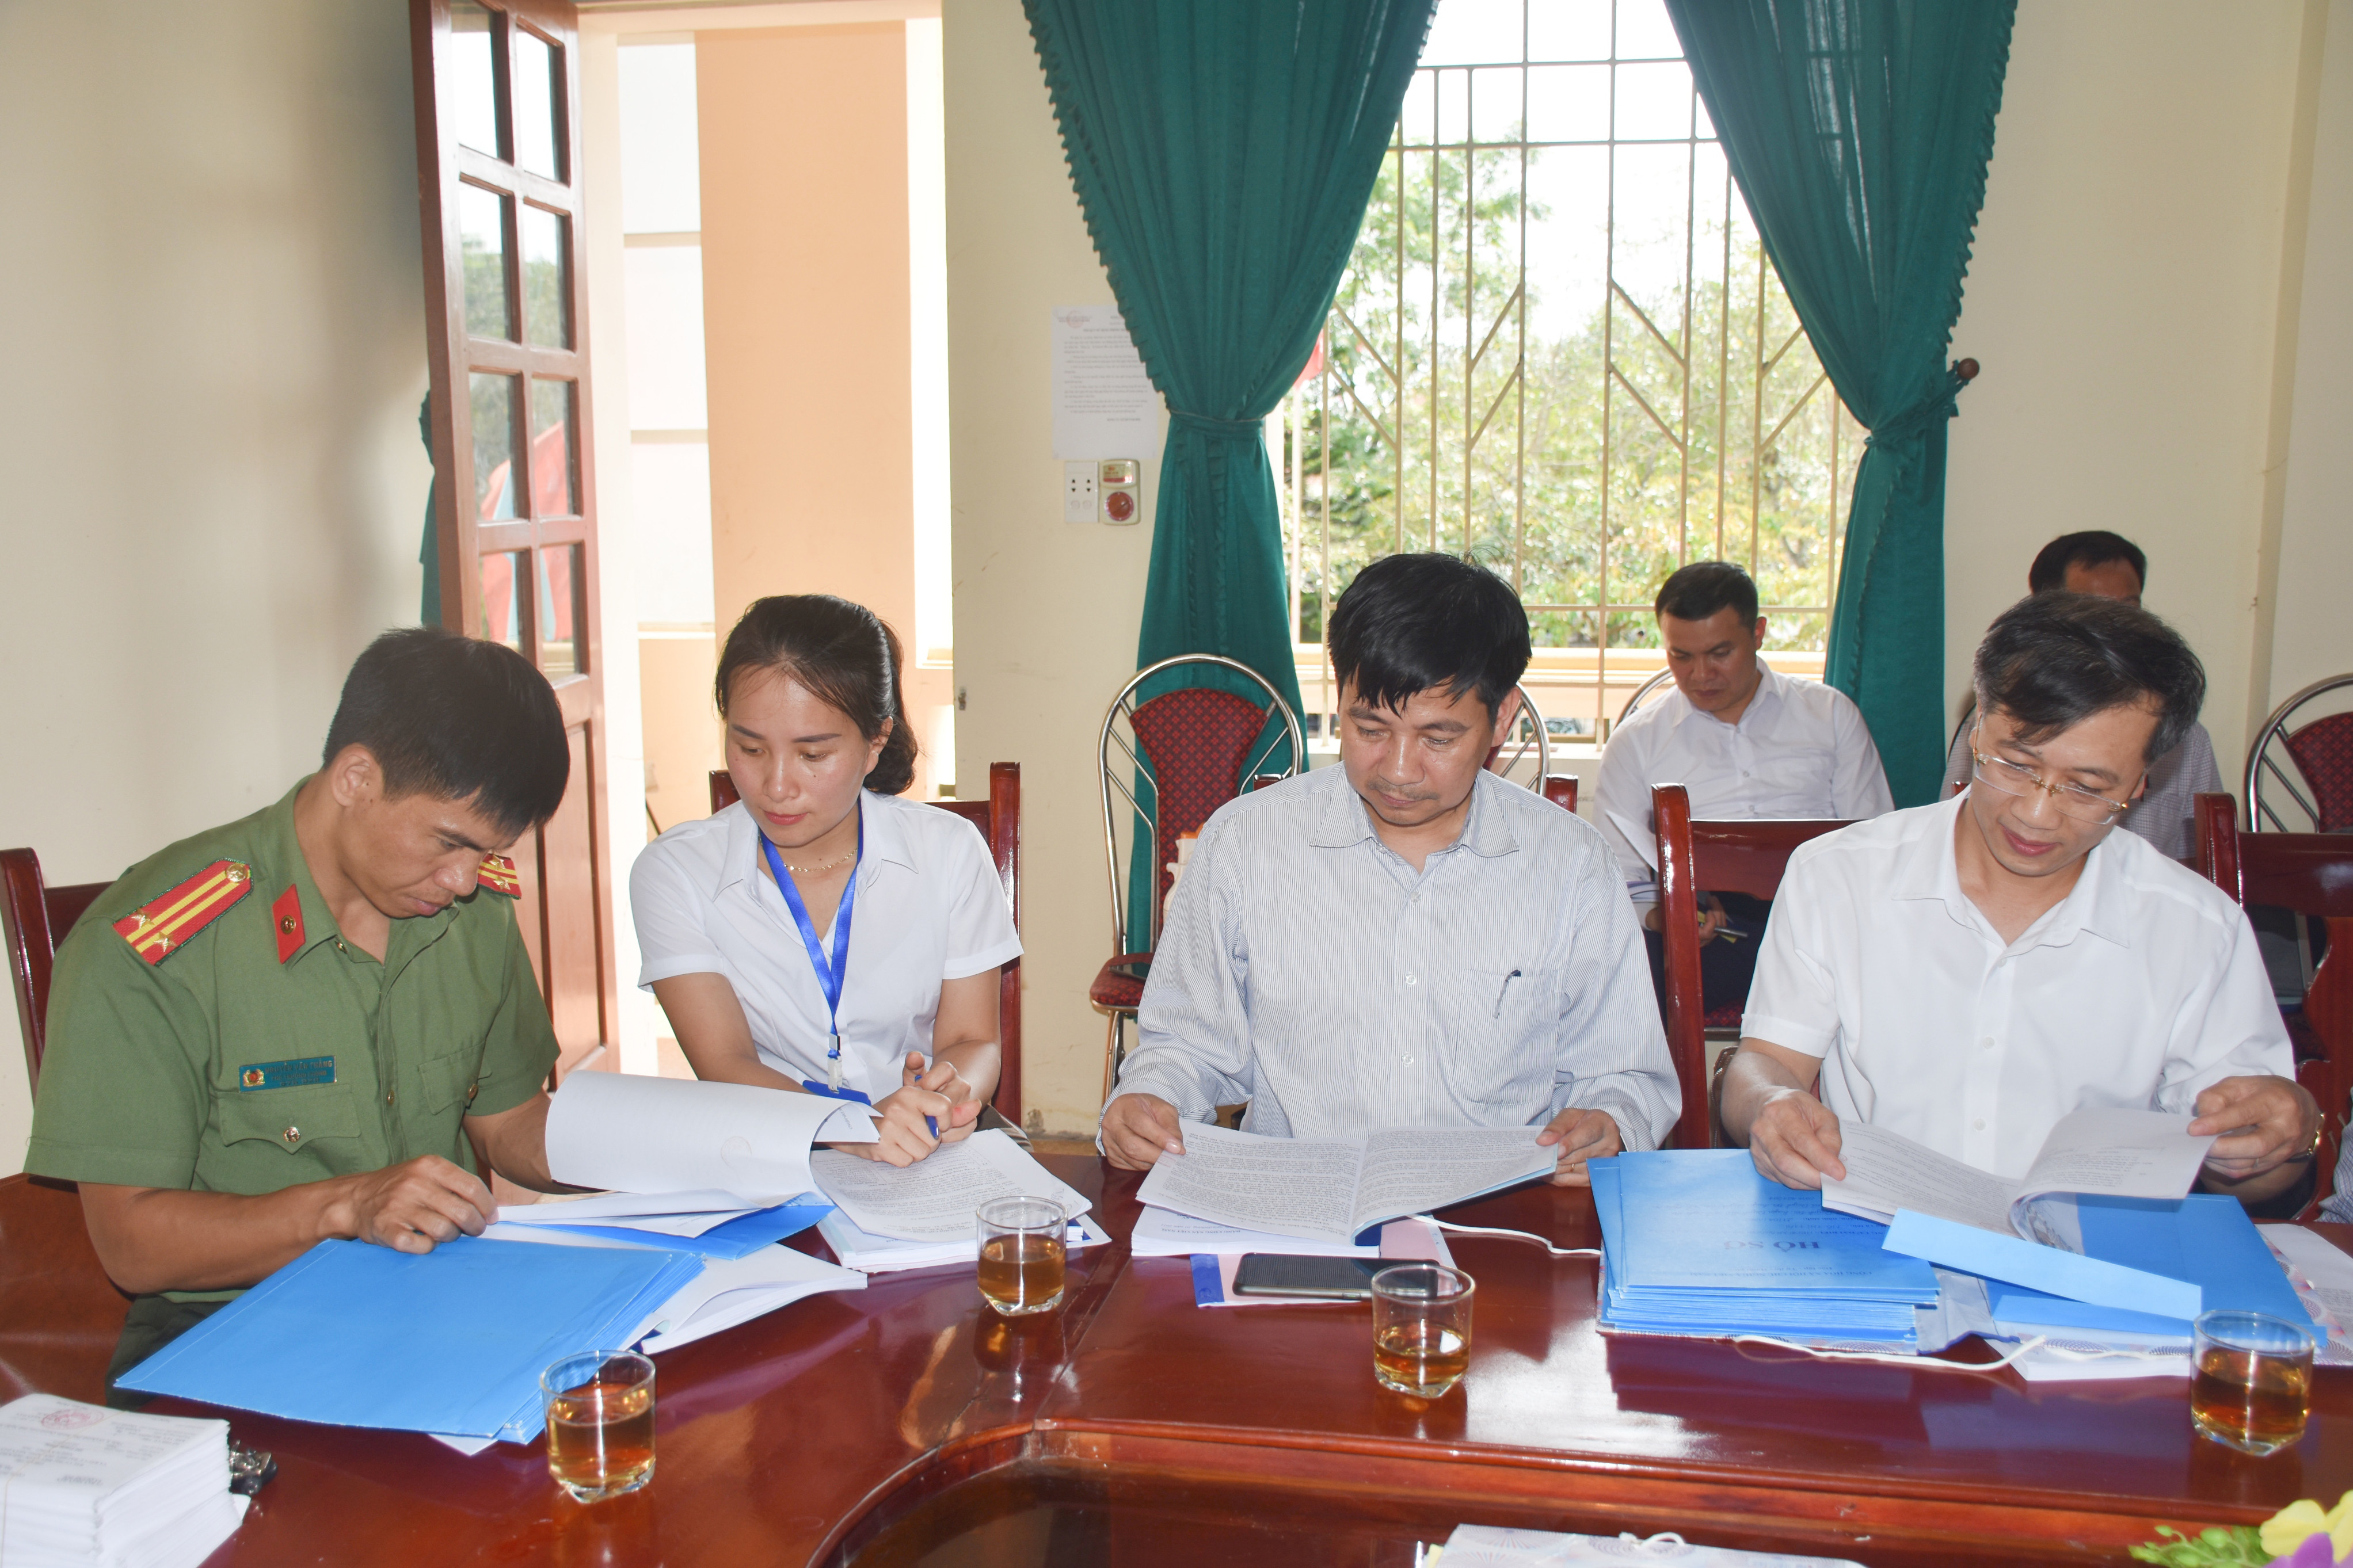 Kiểm tra hồ sơ người ứng cử tại xã Quỳnh Đôi (Quỳnh Lưu). Ảnh: Thanh Lê